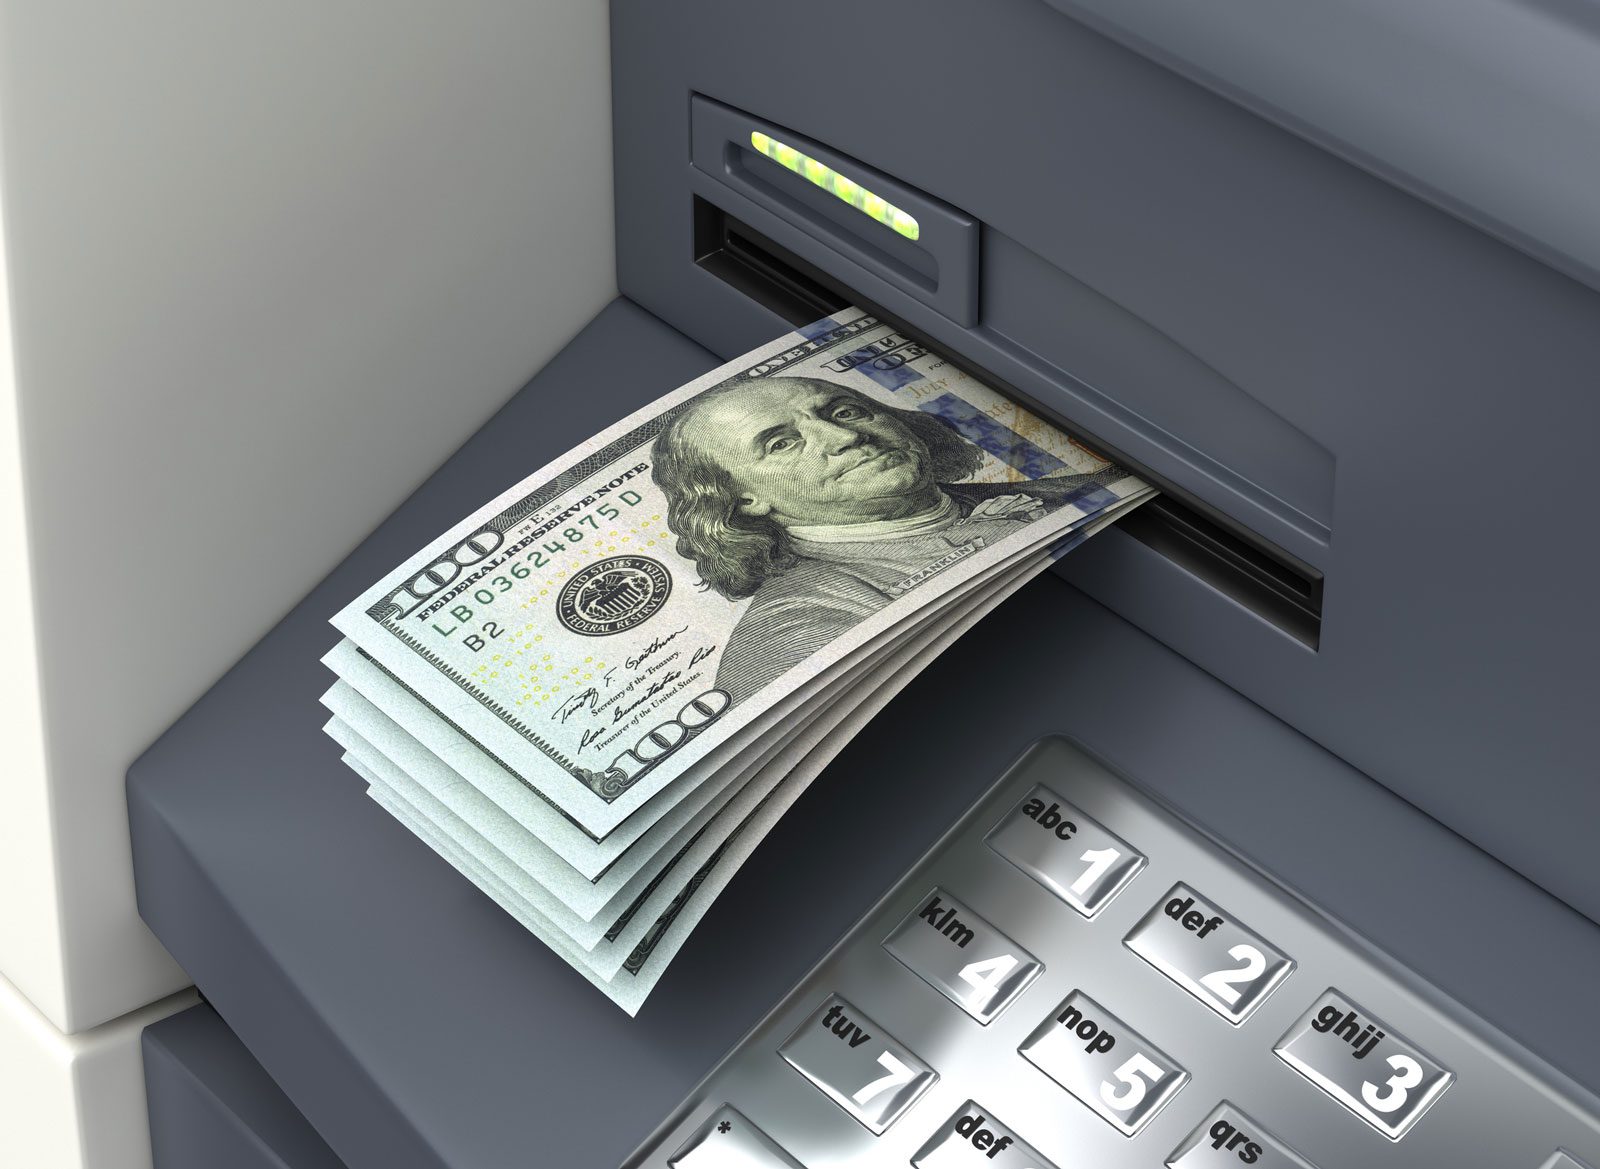 Cash Out ATM